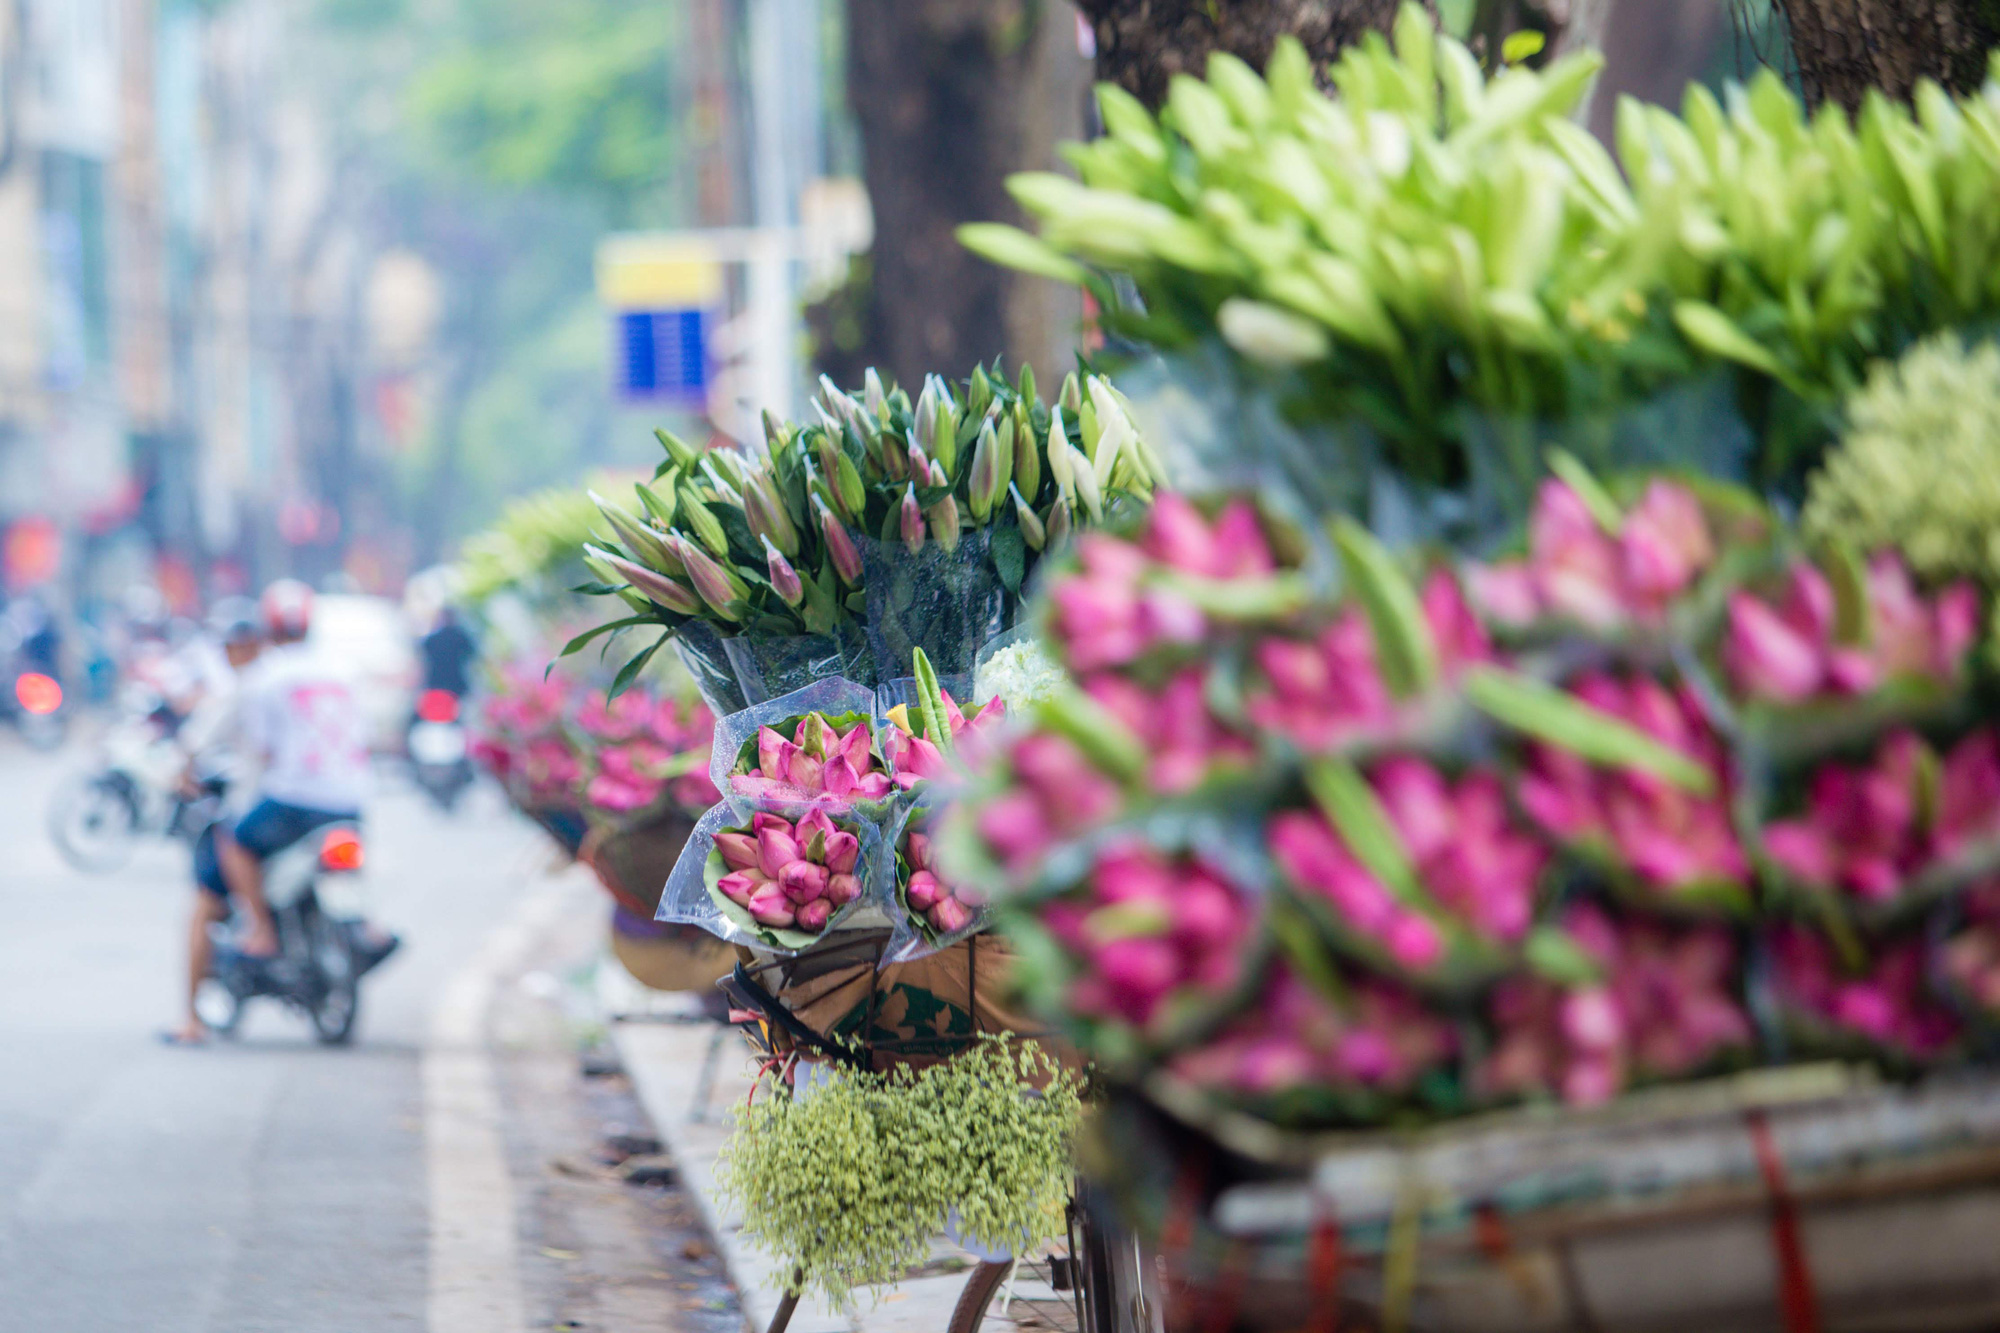 Hoa sen phố Hà Nội là một trong những biểu tượng nổi tiếng của thủ đô đẹp nhất của chúng ta, nơi thu hút rất nhiều người quan tâm. Hình ảnh được chụp từ góc độ độc đáo này sẽ giúp bạn cảm nhận được không khí và vẻ đẹp của nơi đây.